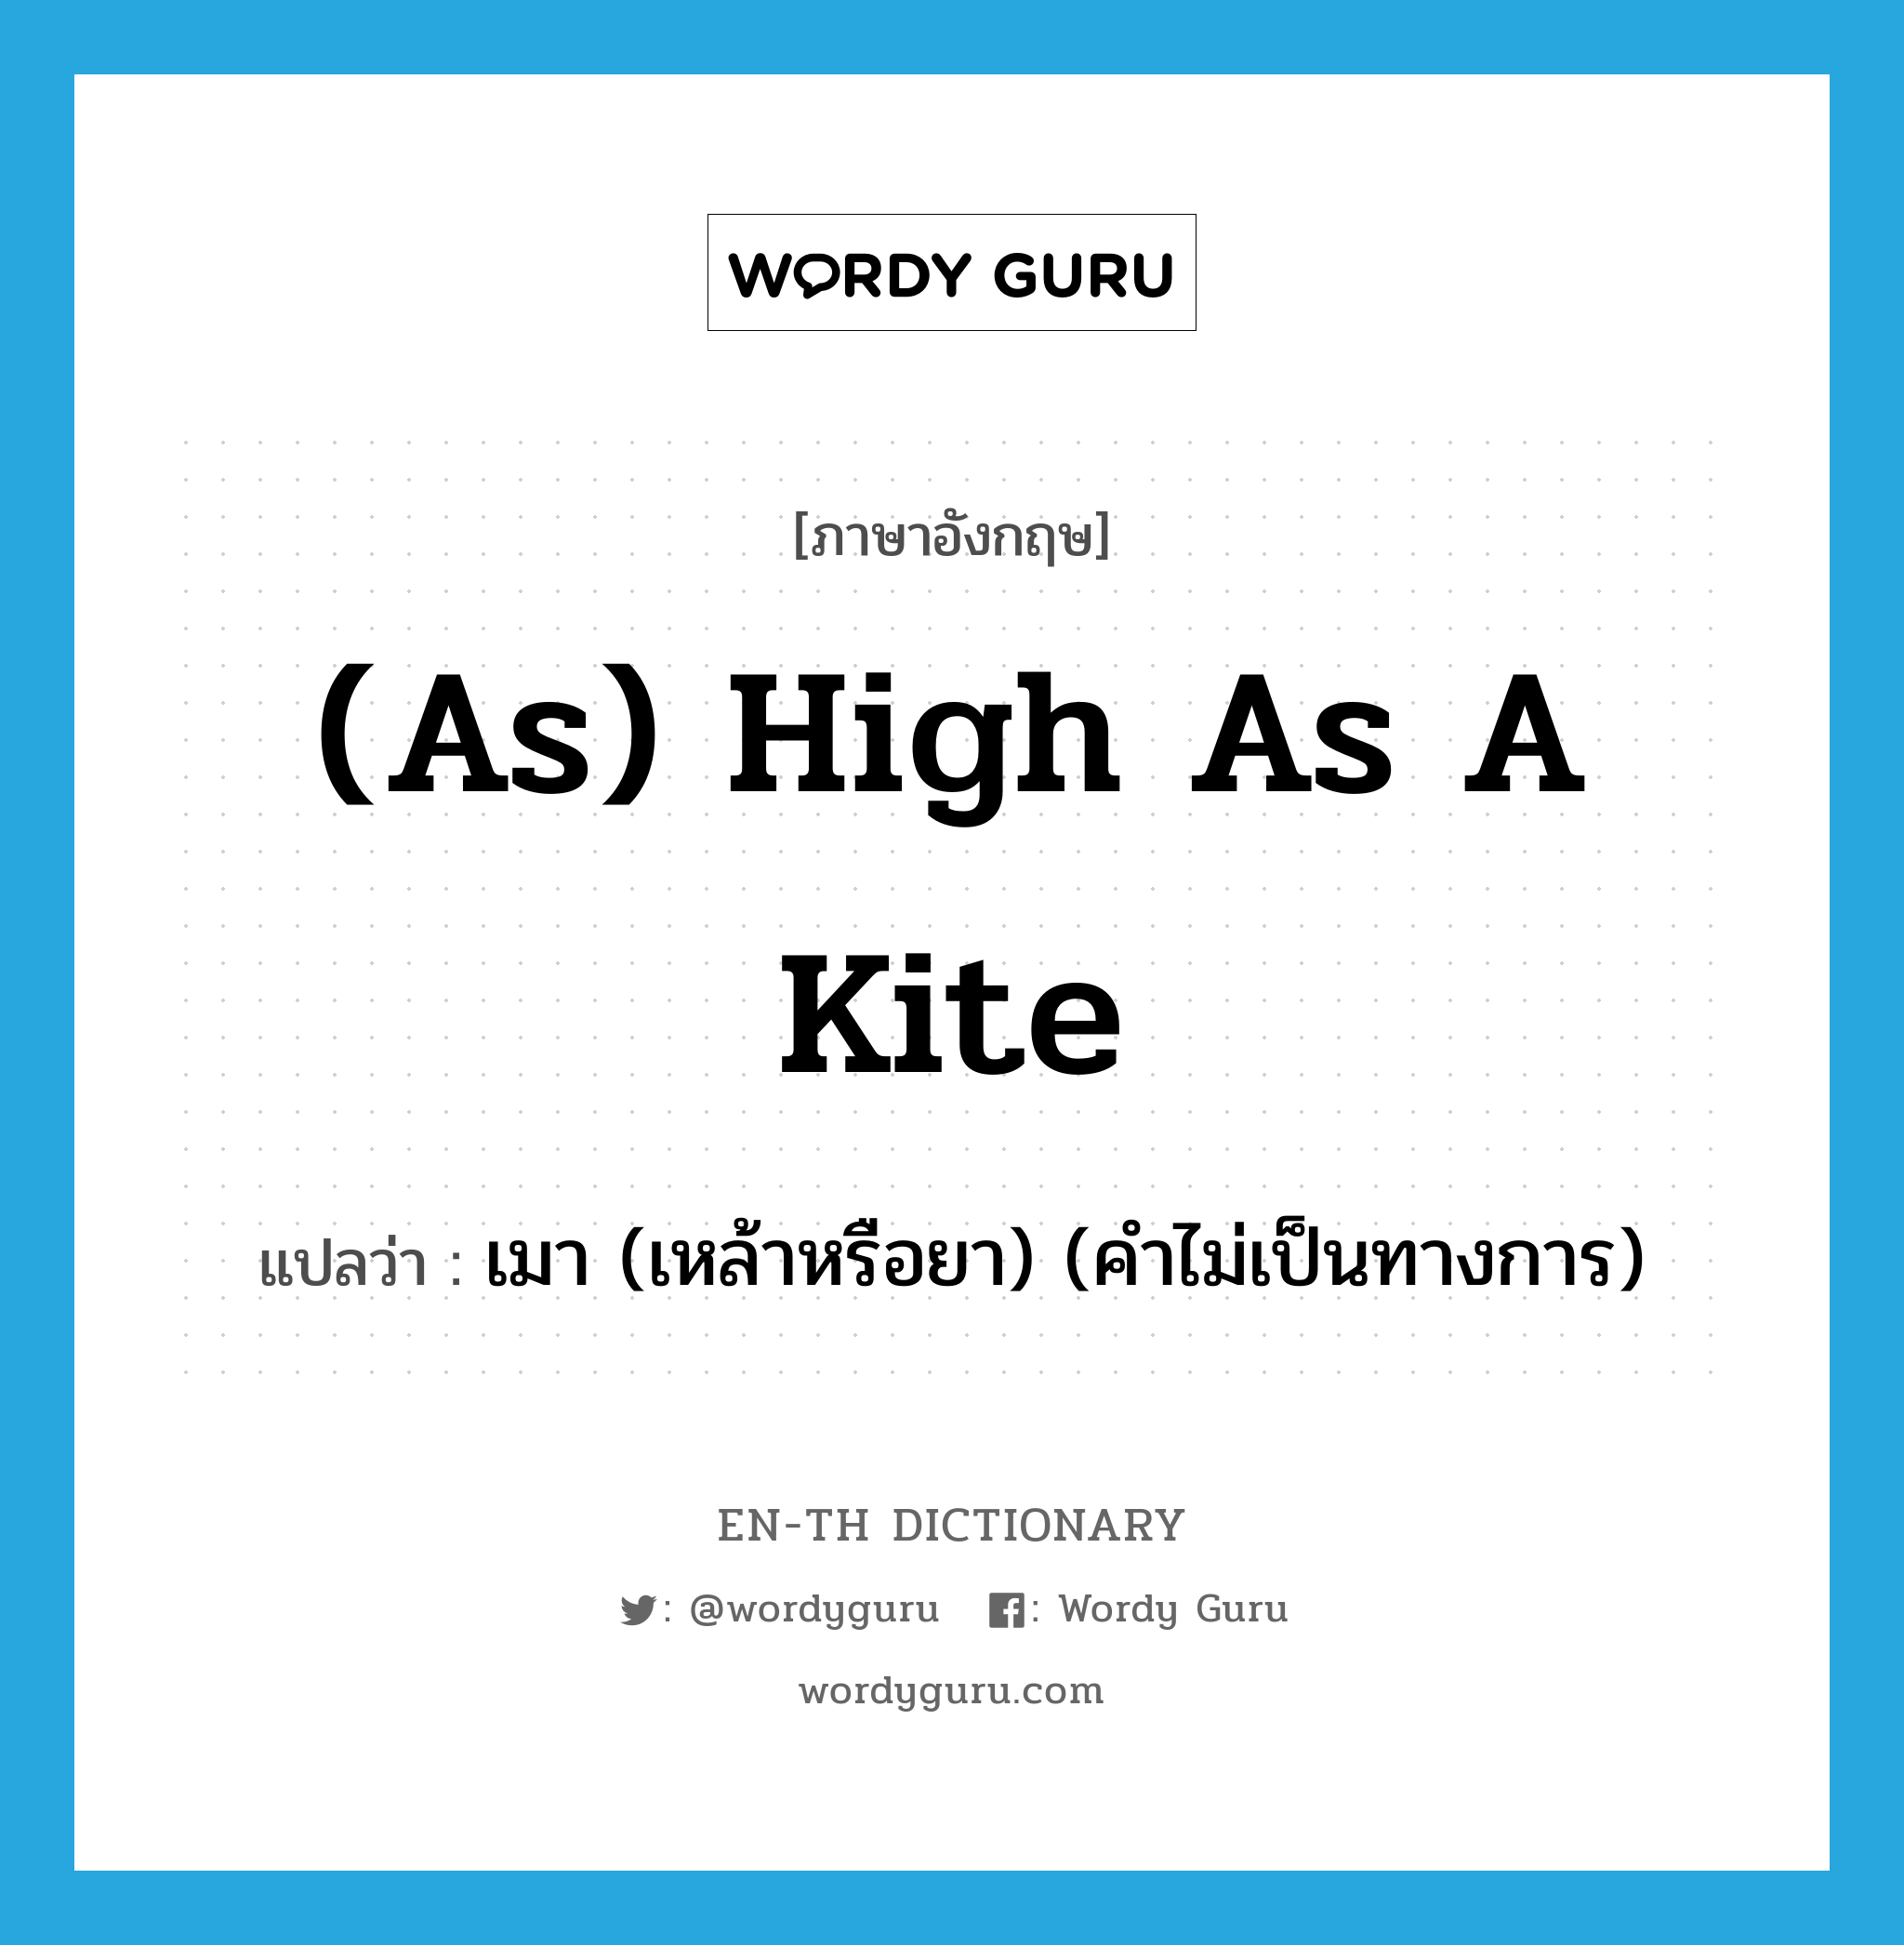 เมา (เหล้าหรือยา) (คำไม่เป็นทางการ) ภาษาอังกฤษ?, คำศัพท์ภาษาอังกฤษ เมา (เหล้าหรือยา) (คำไม่เป็นทางการ) แปลว่า (as) high as a kite ประเภท IDM หมวด IDM